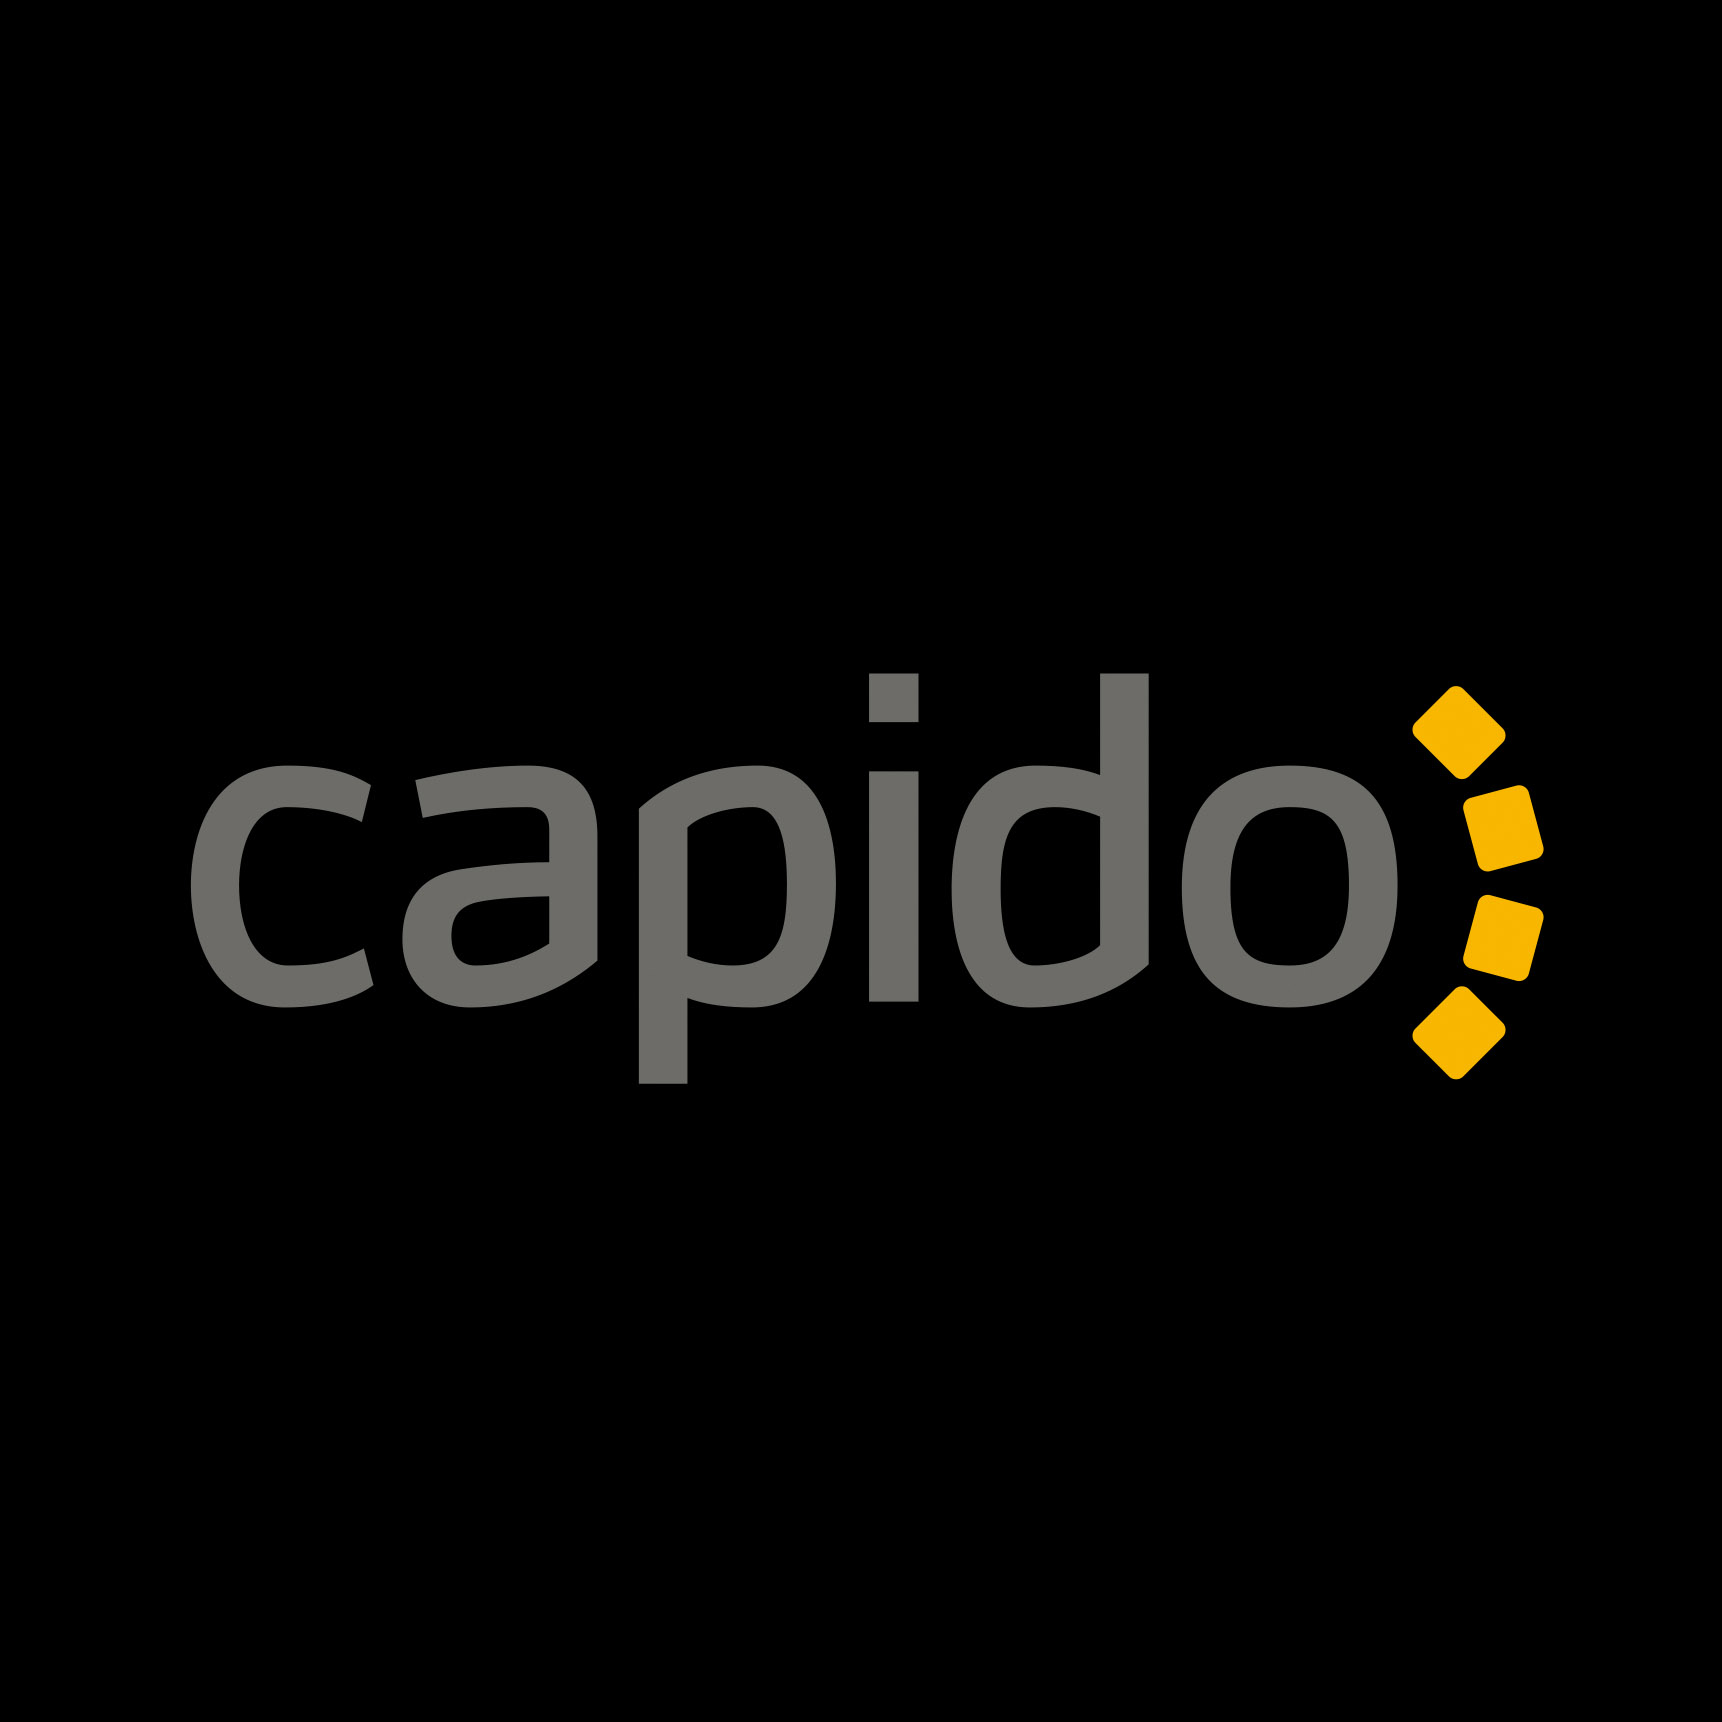 Logo, Capido, made by Therwiz Design